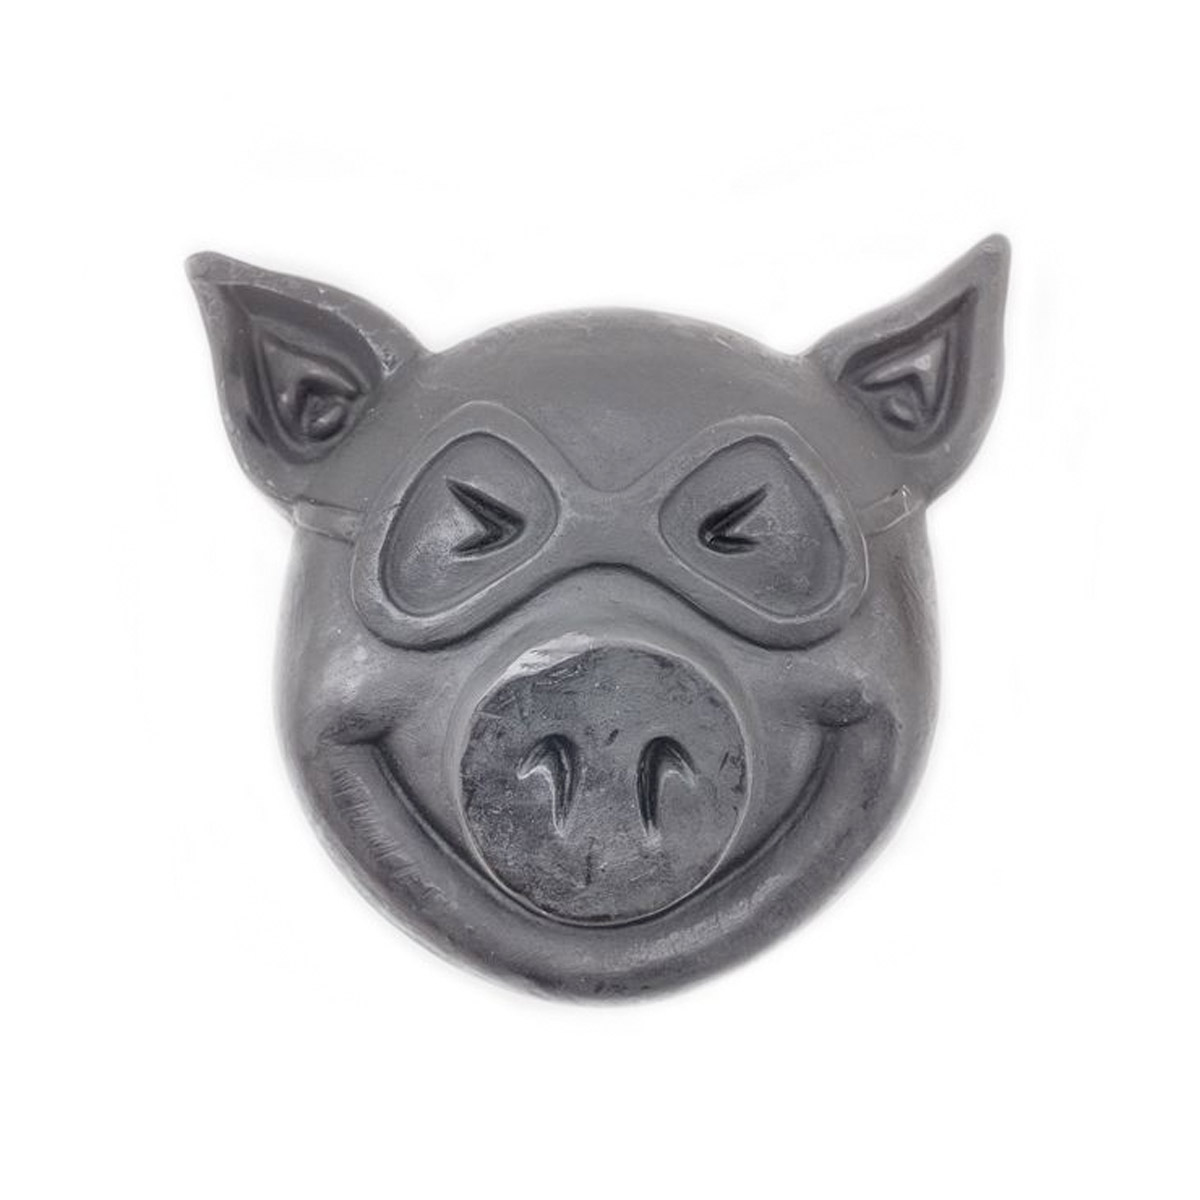 Pig Skatewachs Pig Head Curb Wax (black)